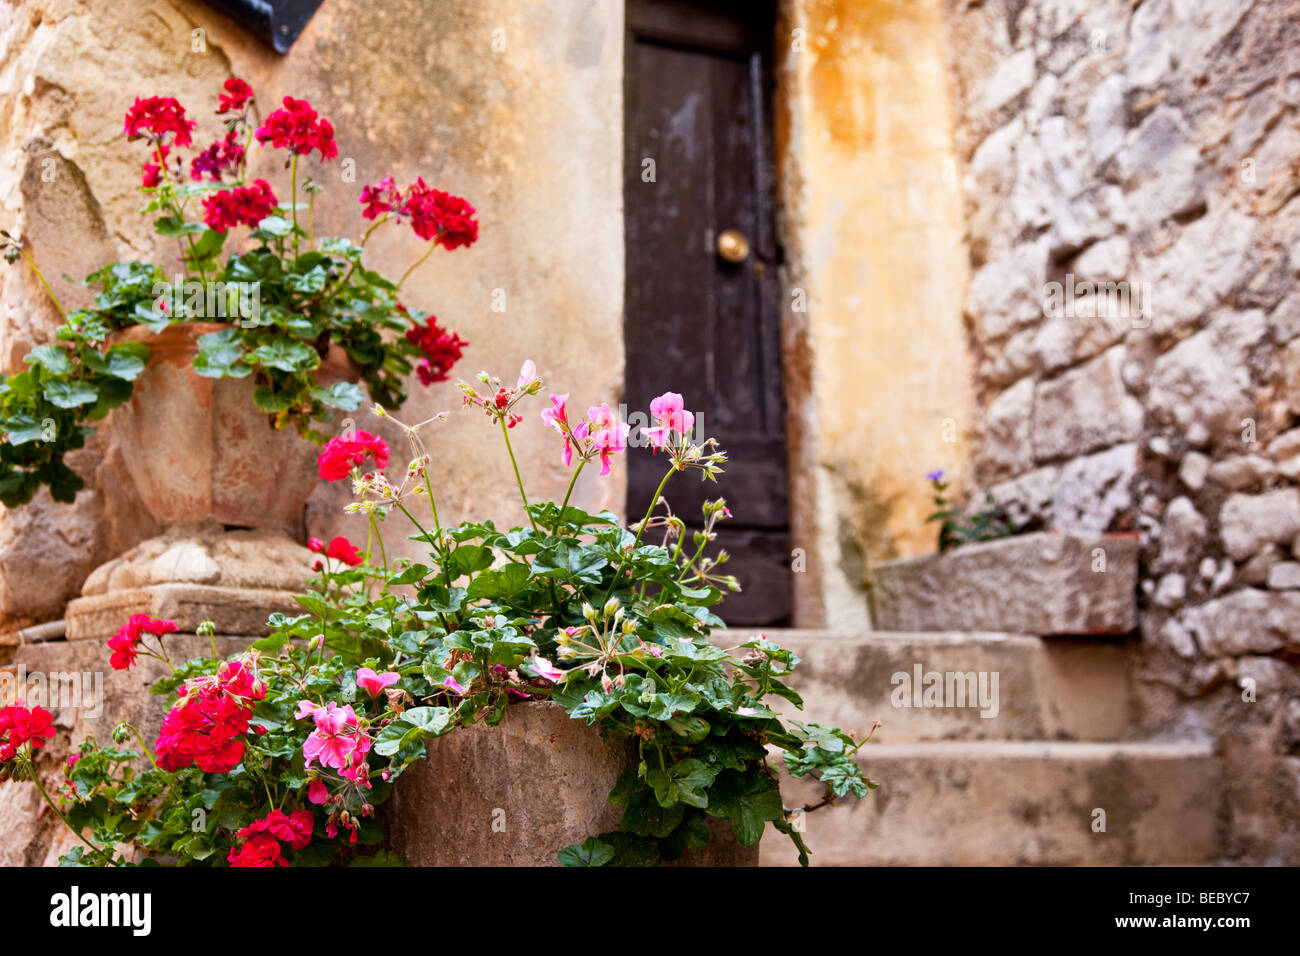 Fleurs en pot sur le démarchage à Eze, Provence France Banque D'Images